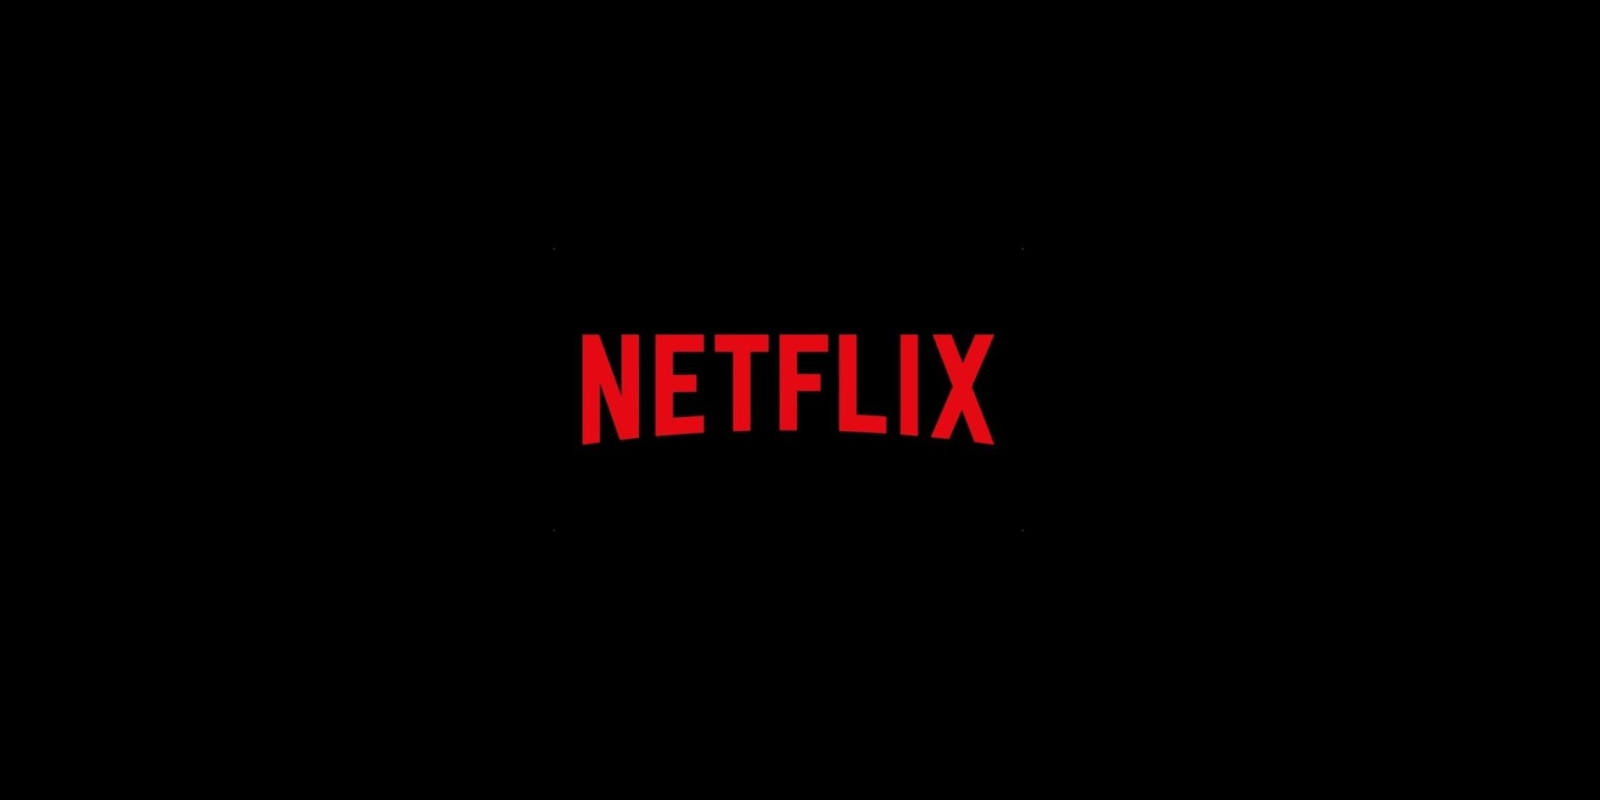 Netflix rozstrzygnął przetarg bosko MEDIARUN COM NETFLIX PRZETARG V1